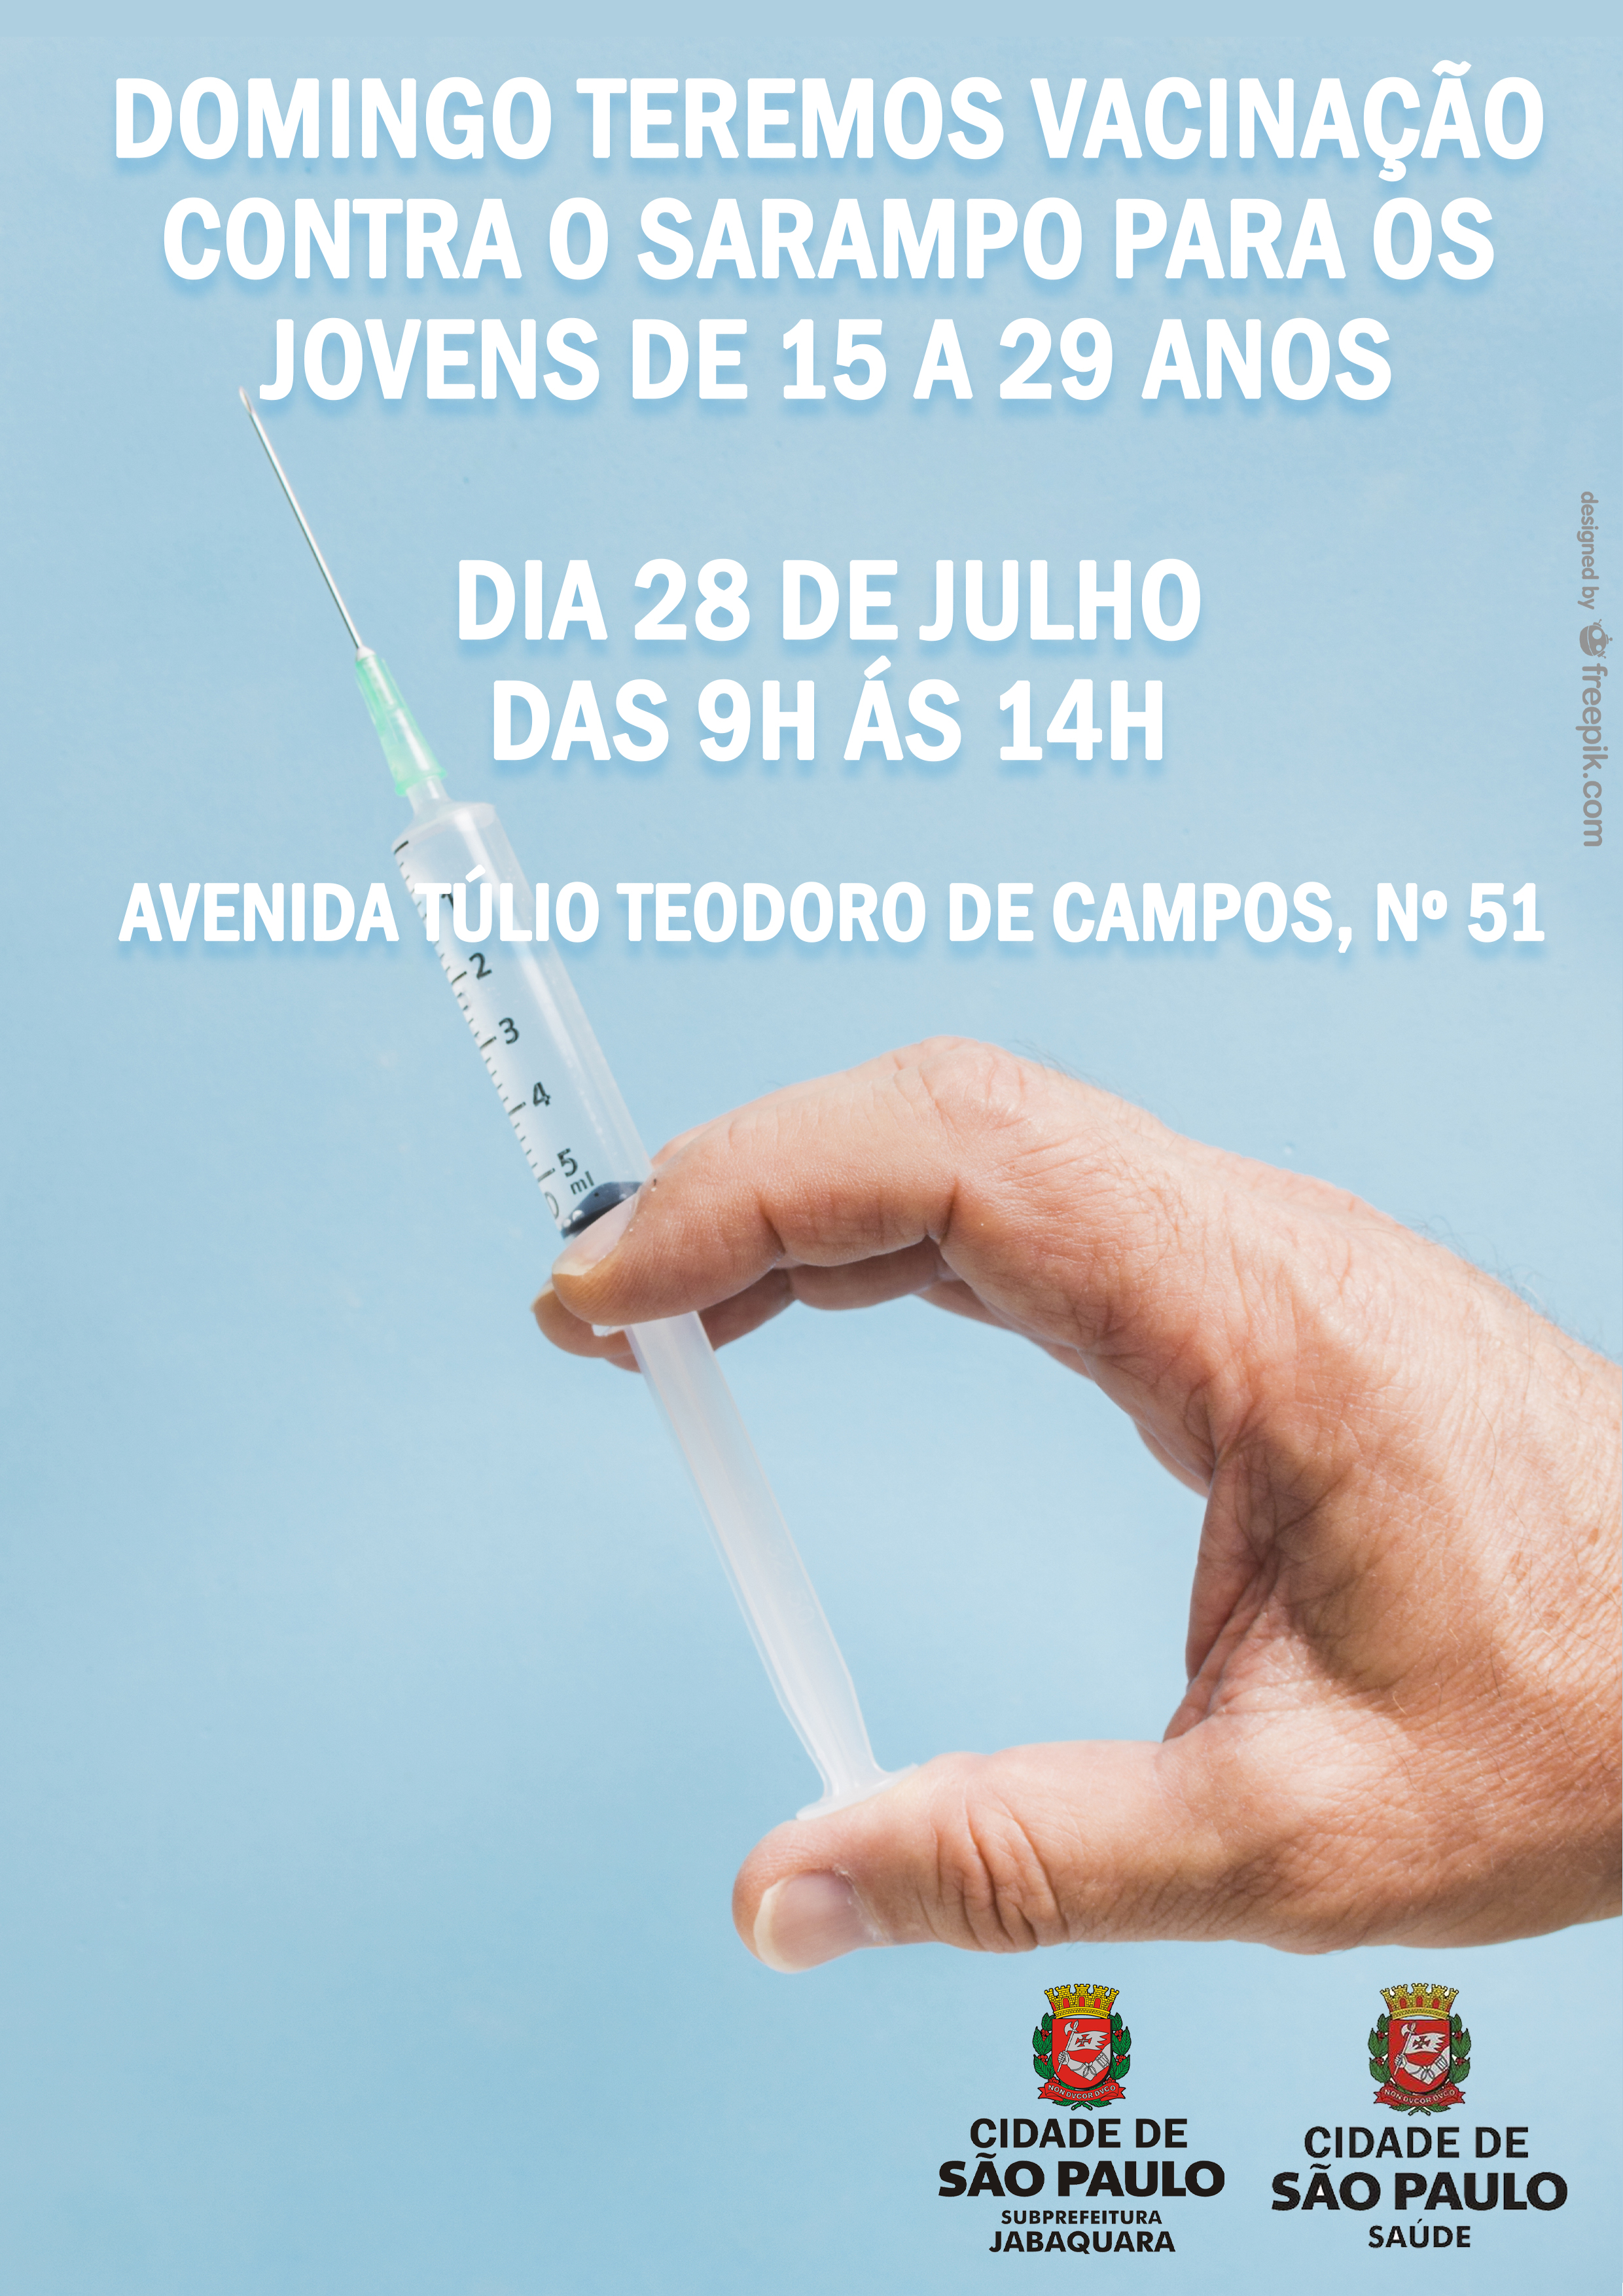  A imagem de uma mão segurando uma seringa e os dizeres: "Domingo teremos vacinação contra o sarampo, dia 28 de julho, das 9h às 14h. Avenida Túlio Teodoro de Campos, nº 51